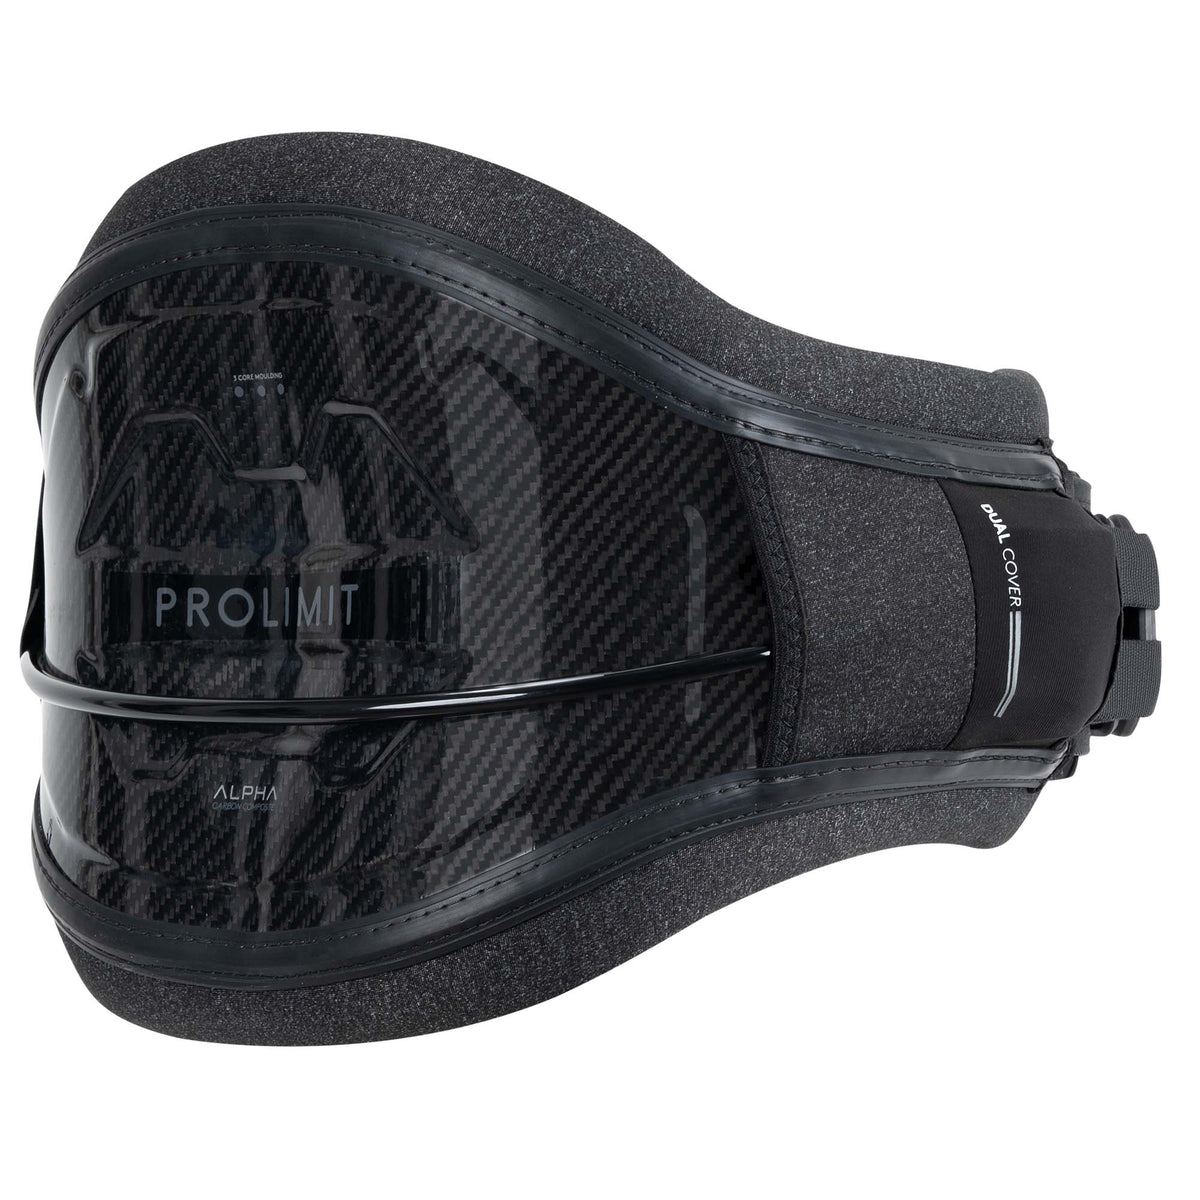 PROLIMIT ALPHA BLACK/SILVER rigid kitesurf harness